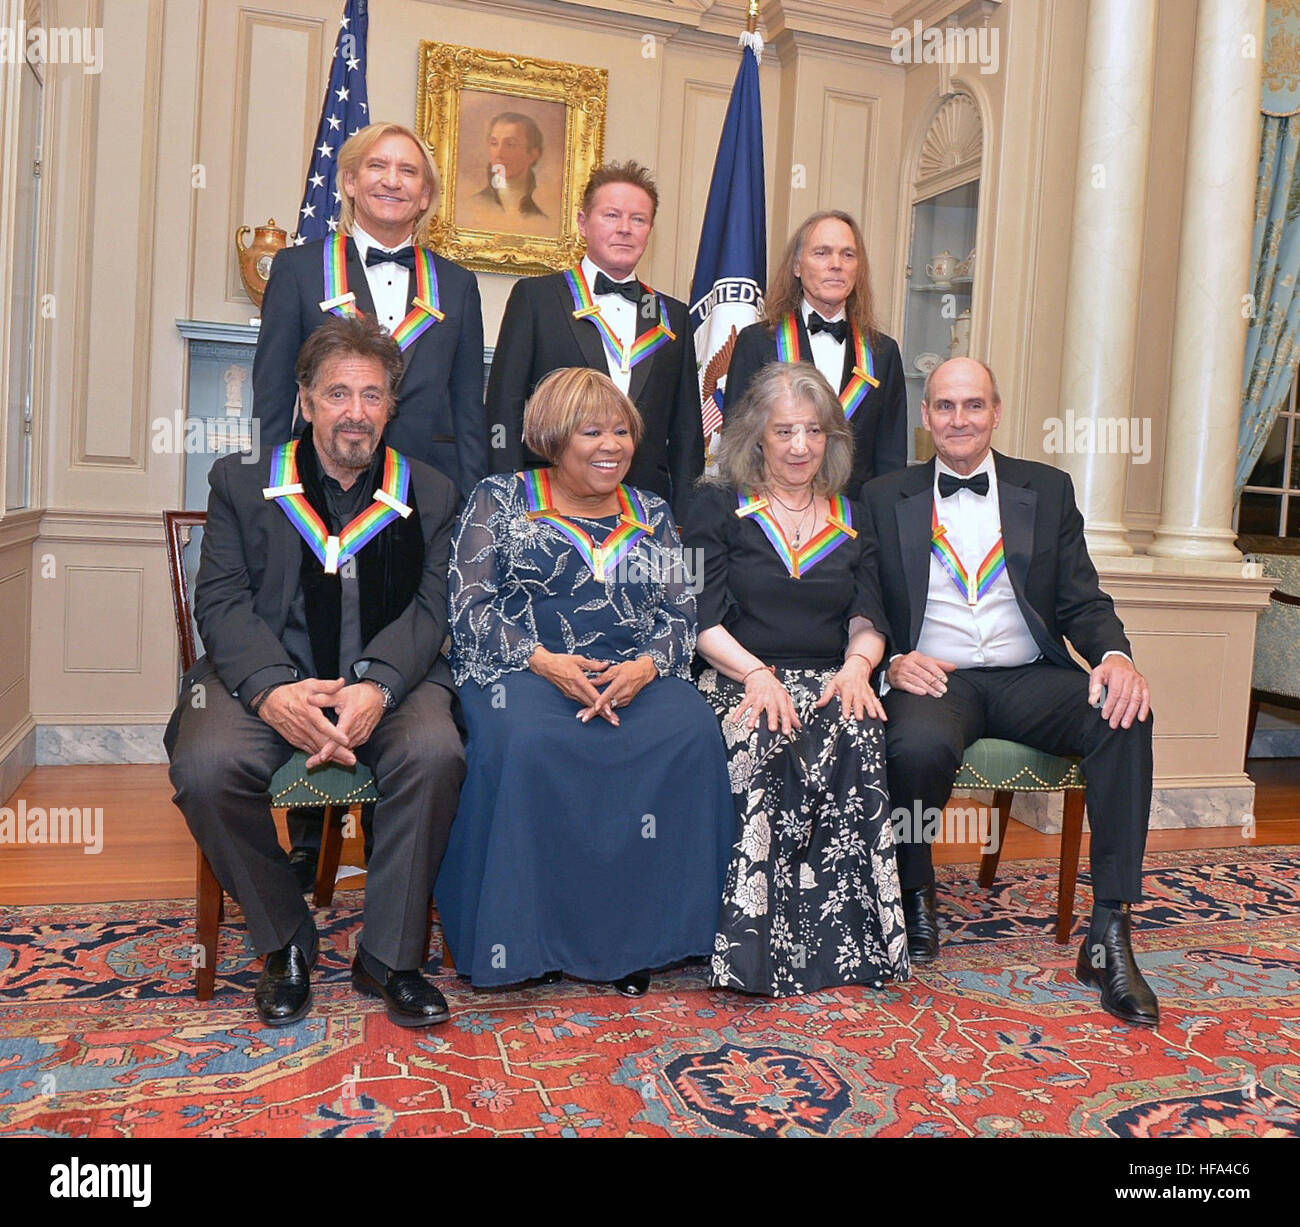 Les lauréats 2016 Kennedy Centre pose pour une photo à la Kennedy Center Honors Dîner, assisté par le secrétaire d'État américain John Kerry au département d'État des États-Unis à Washington, D.C., le 4 décembre 2016. Banque D'Images